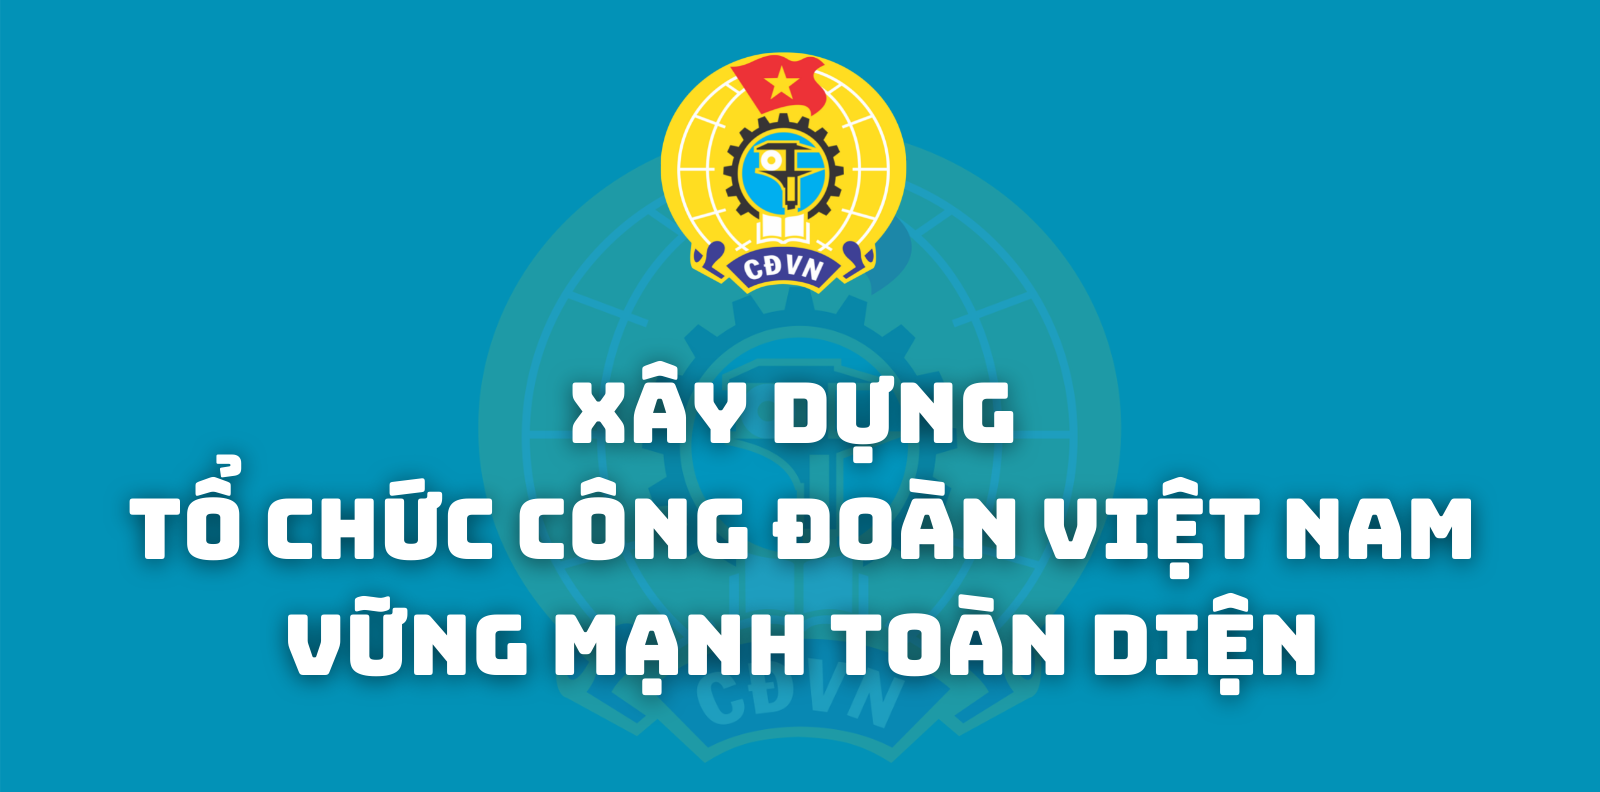 [Infographic] Xây dựng tổ chức Công đoàn Việt Nam vững mạnh toàn diện